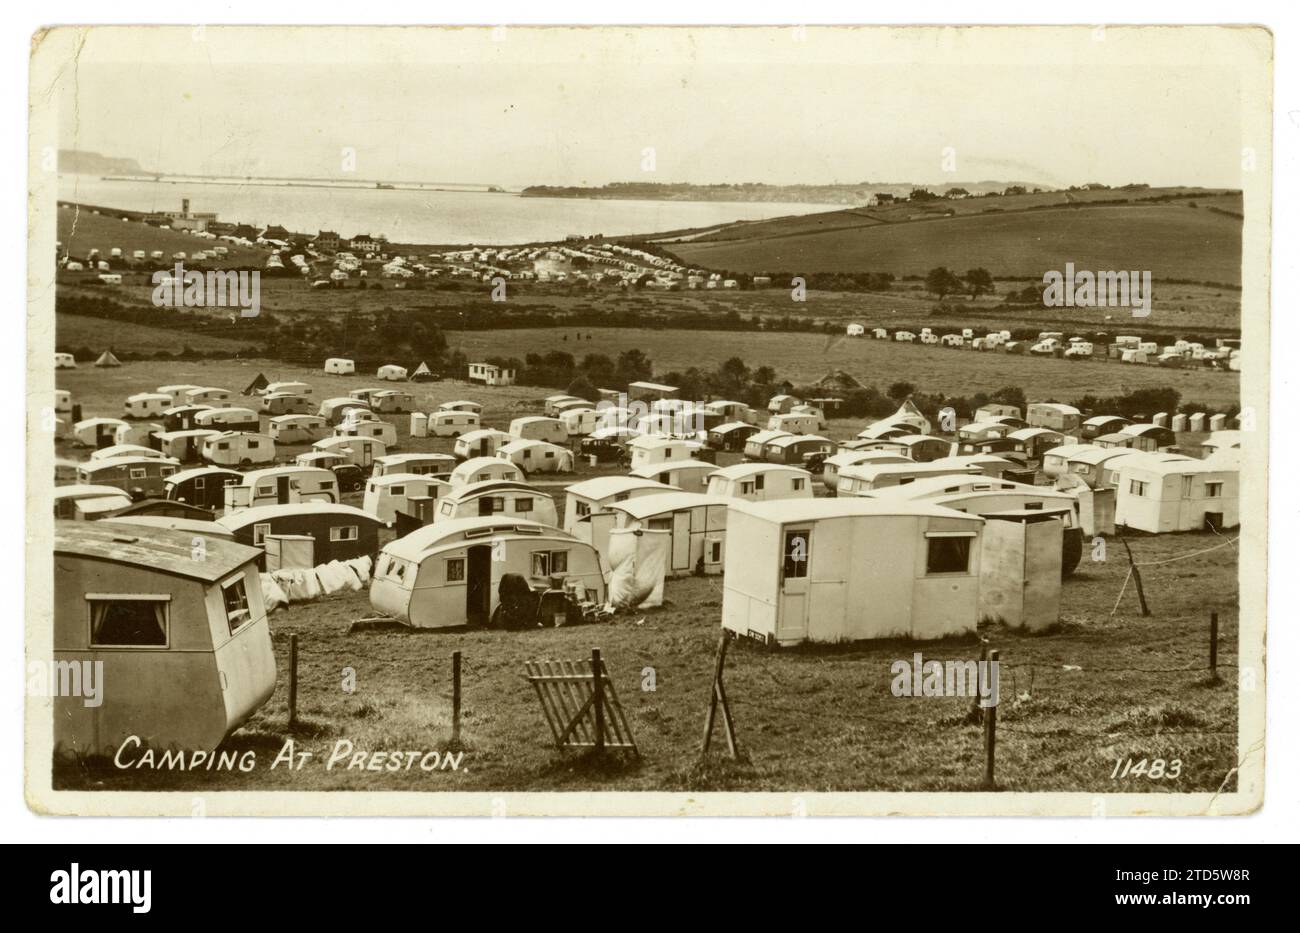 Cartolina originale degli anni '1950 di un affollato parco per roulotte/campeggio a Preston, vicino a Weymouth, Dorset, Regno Unito datata/pubblicata nell'agosto 1952 Foto Stock